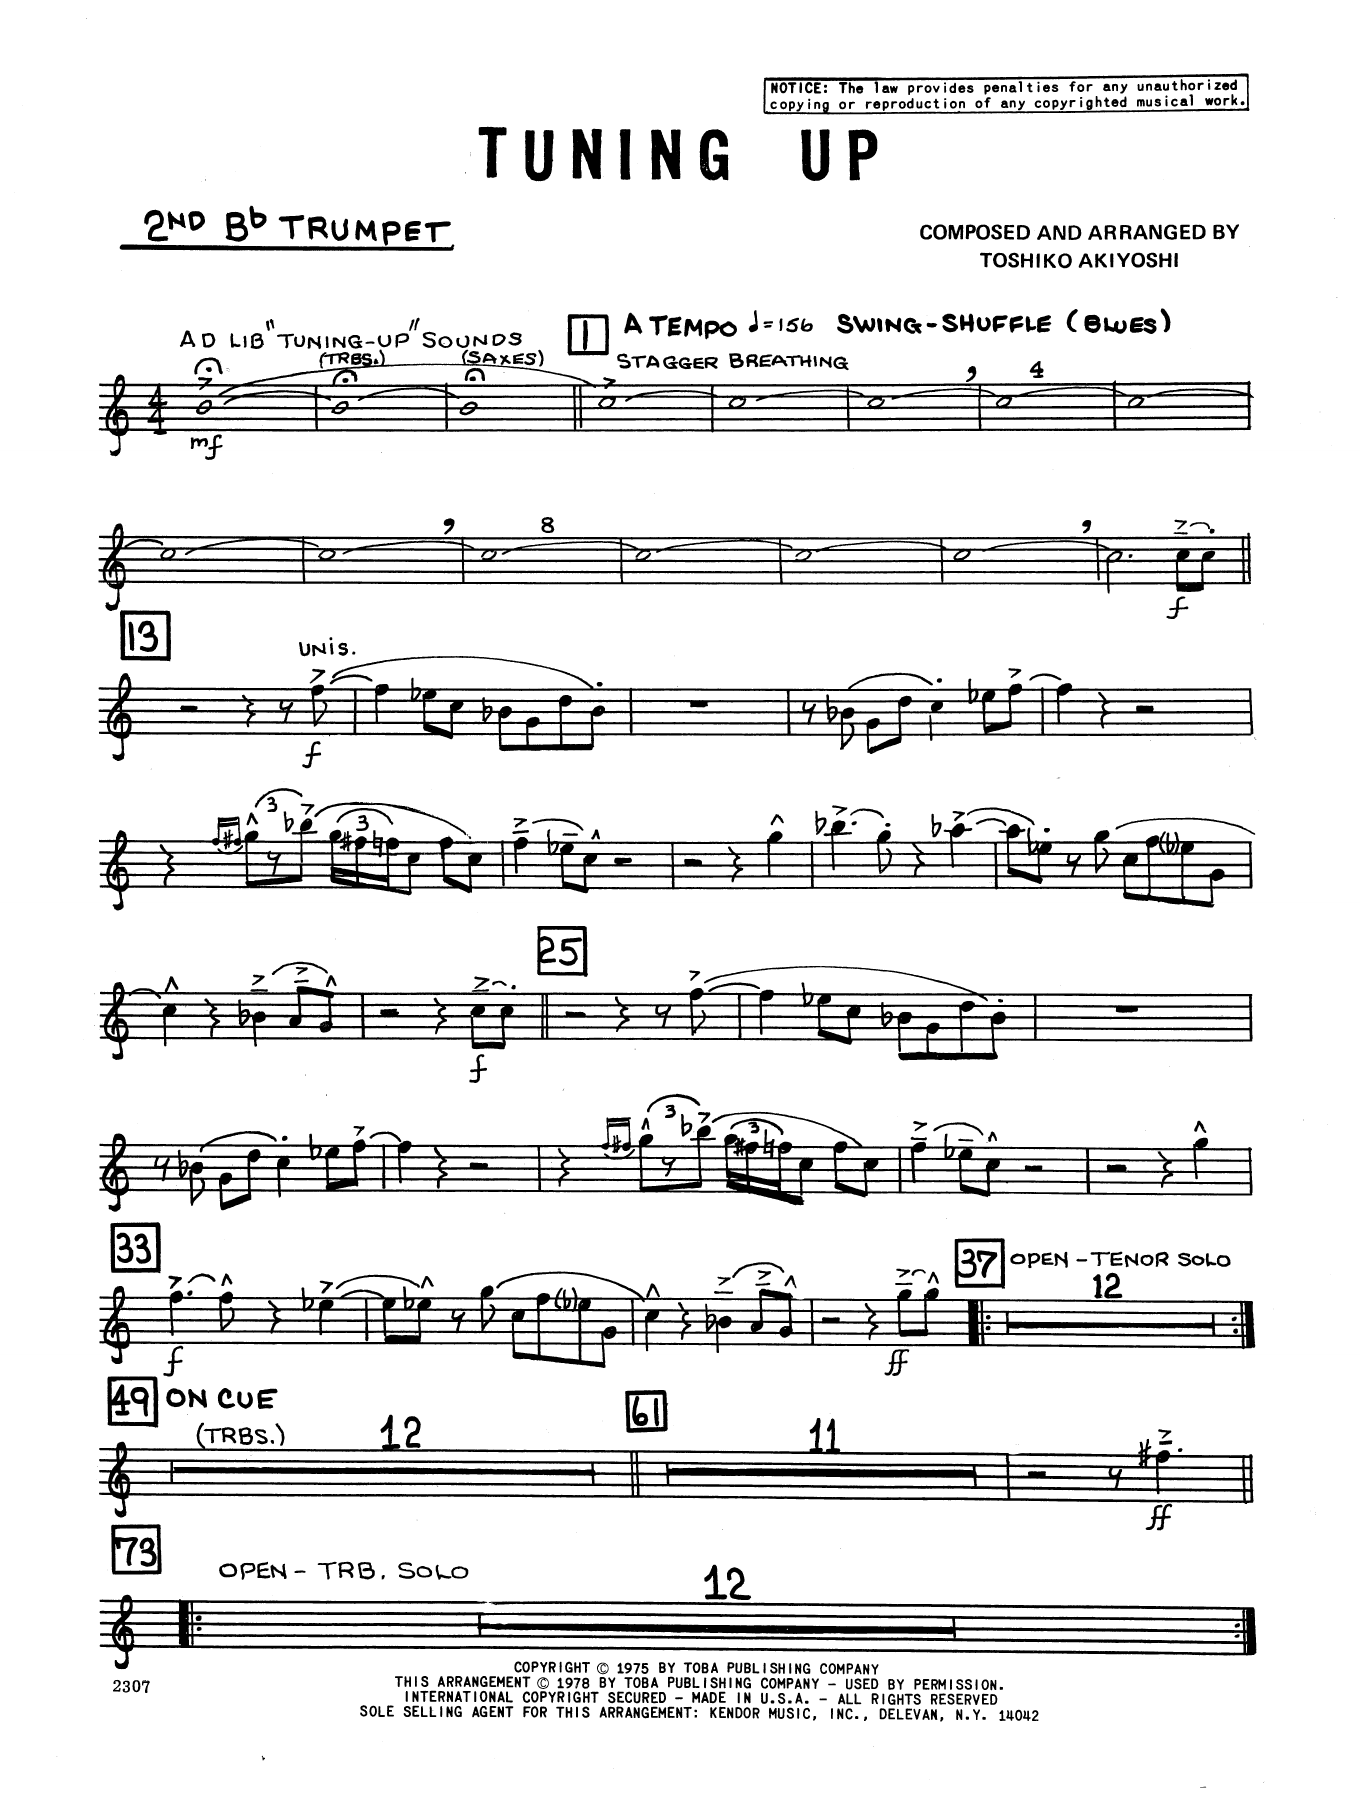 Download Toshiko Akiyoshi Tuning Up - 2nd Bb Trumpet Sheet Music